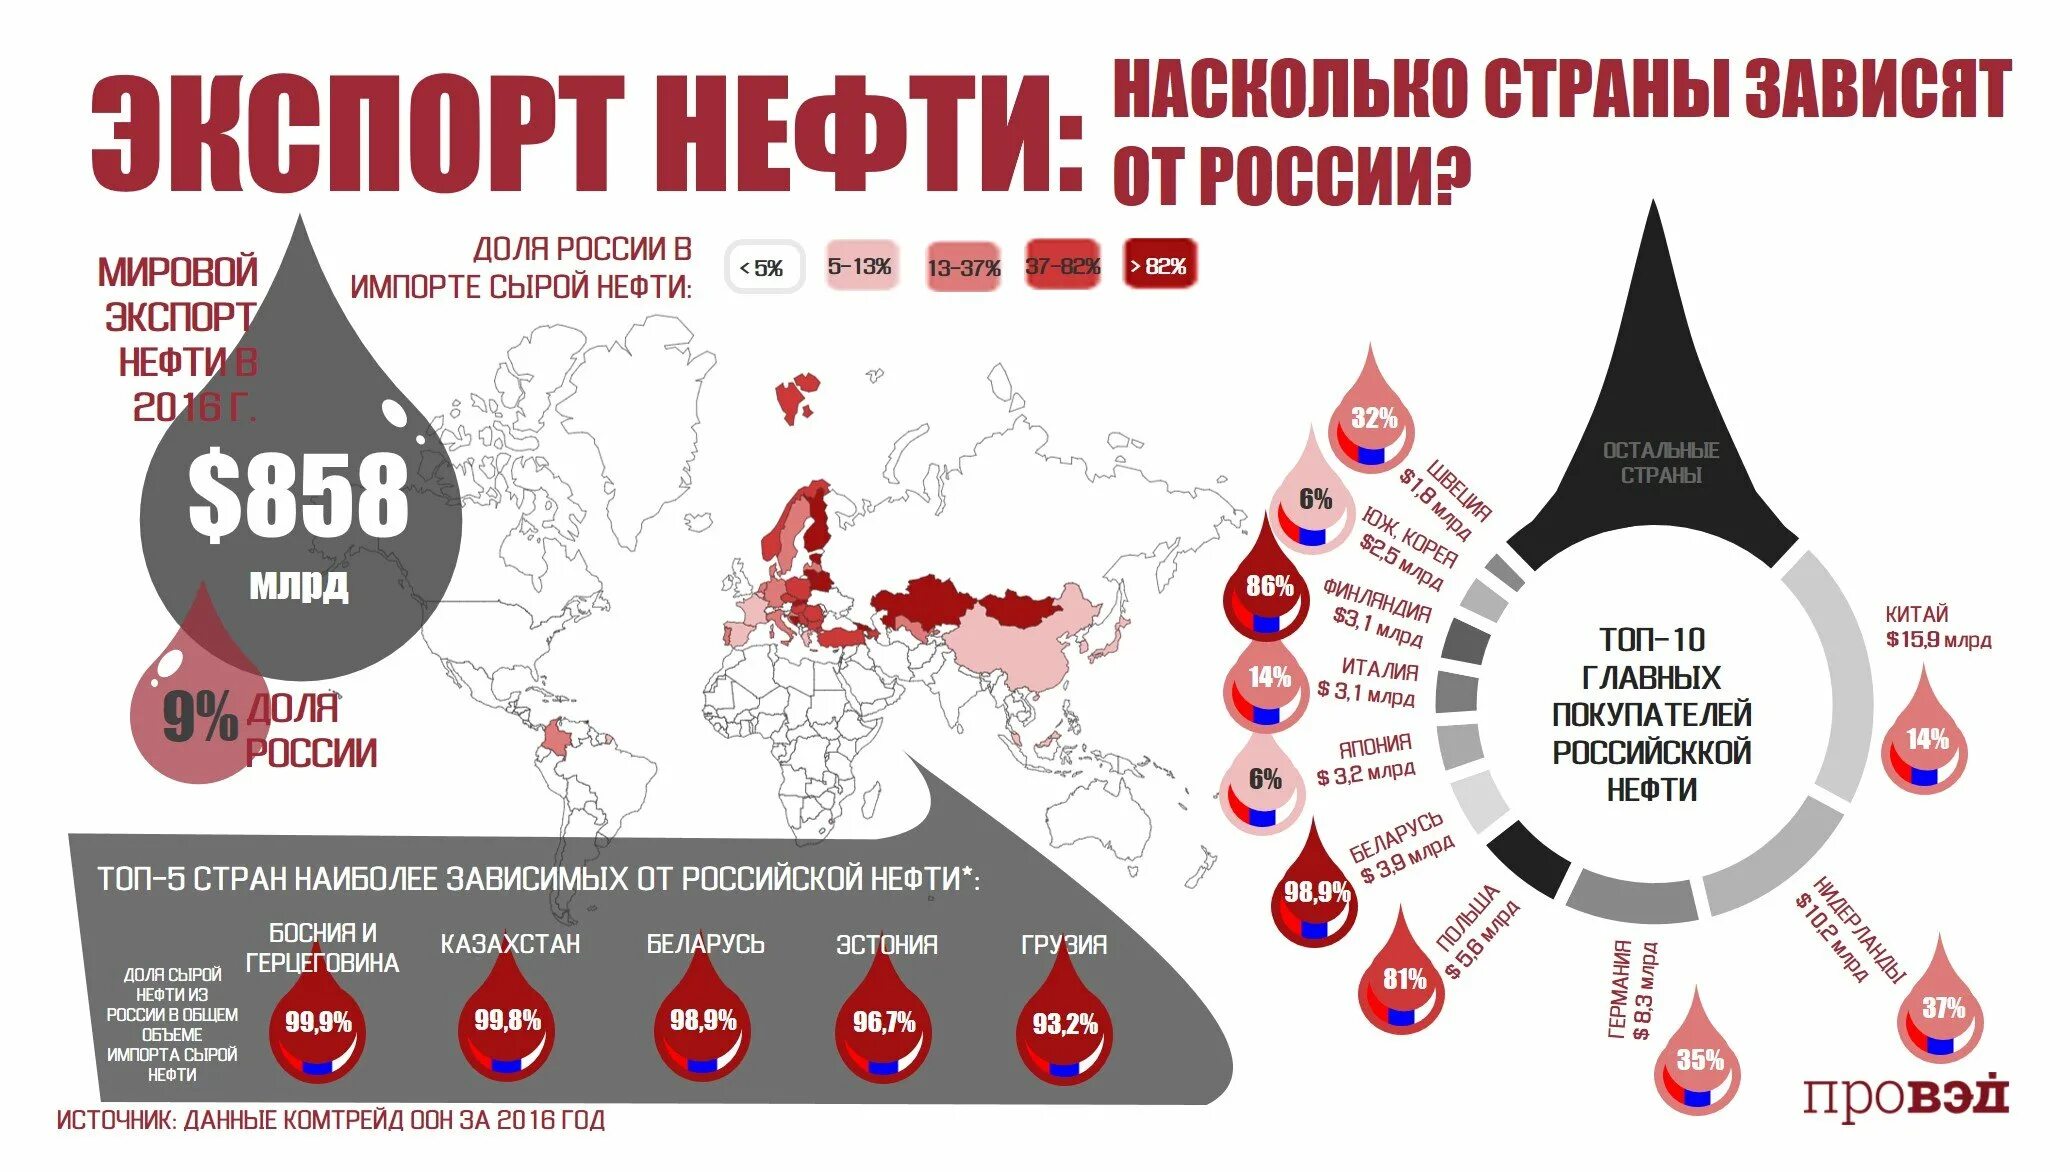 Зависимость стран от Российской нефти. Куда Россия продает нефть по странам. Покупатели Российской нефти страны. Зависимость стран Европы от Российской нефти.